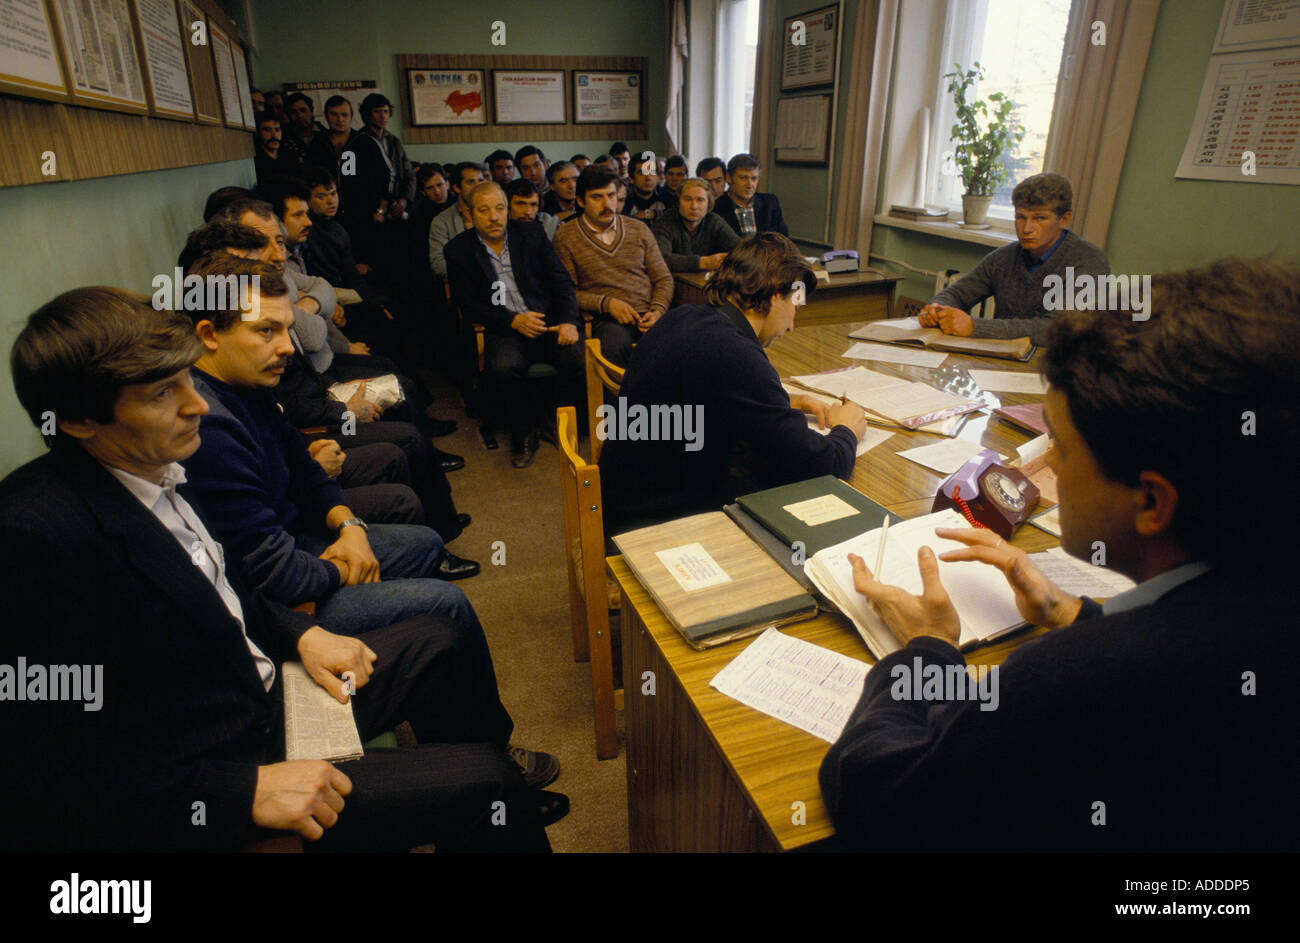 Ucrania Los mineros asisten a una sesión antes de su turno en la mina Sots Donbas, Donetske, este de Ucrania, el 1989 de octubre. Foto de stock